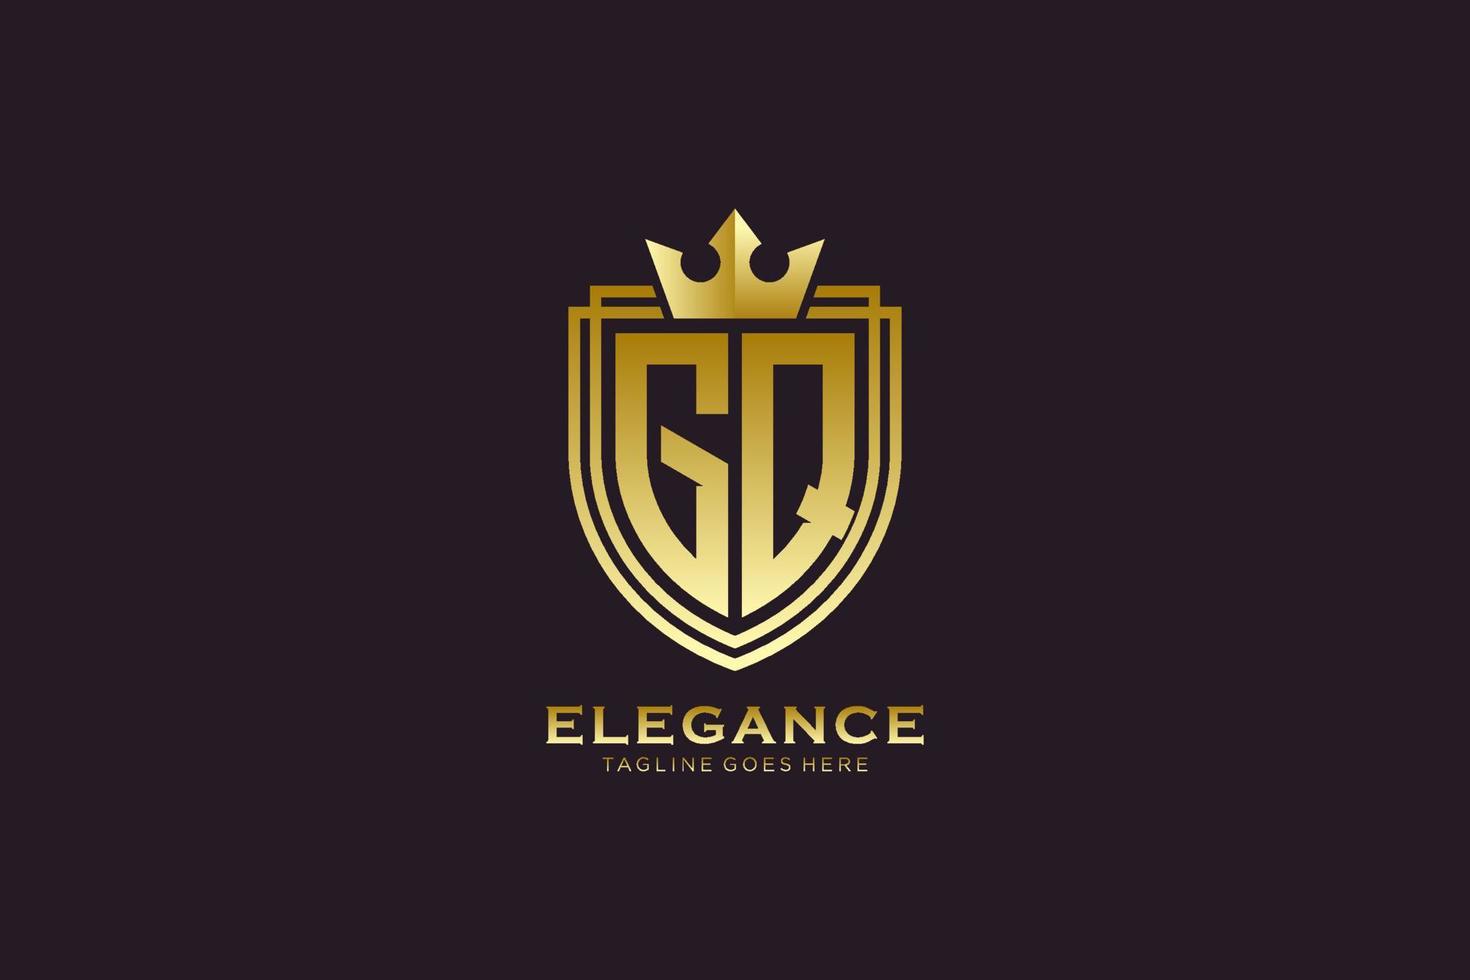 logotipo de monograma de lujo elegante inicial gq o plantilla de placa con pergaminos y corona real - perfecto para proyectos de marca de lujo vector